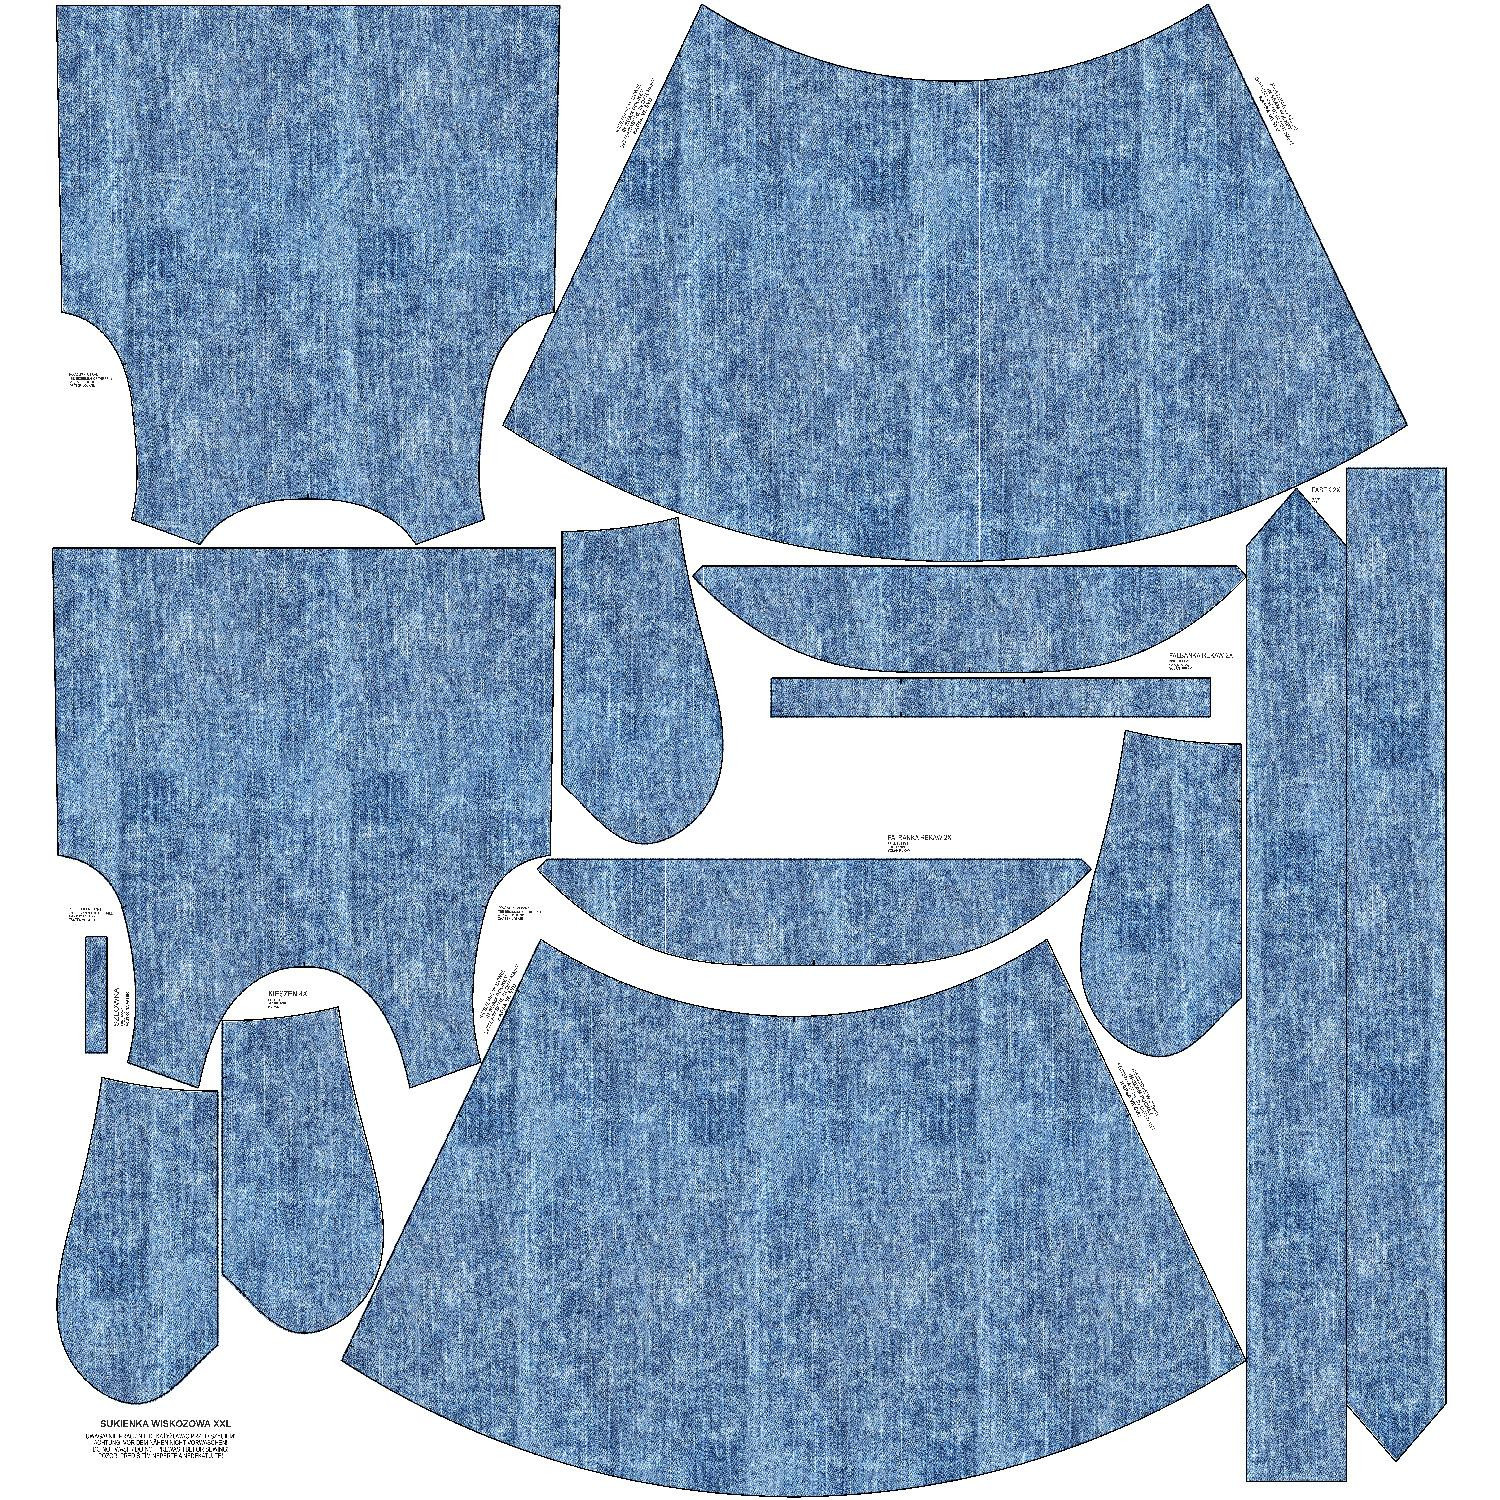 SUKIENKA "EMMA" - PRZECIERANY JEANS (niebieski) - Jersey wiskozowy z elastanem